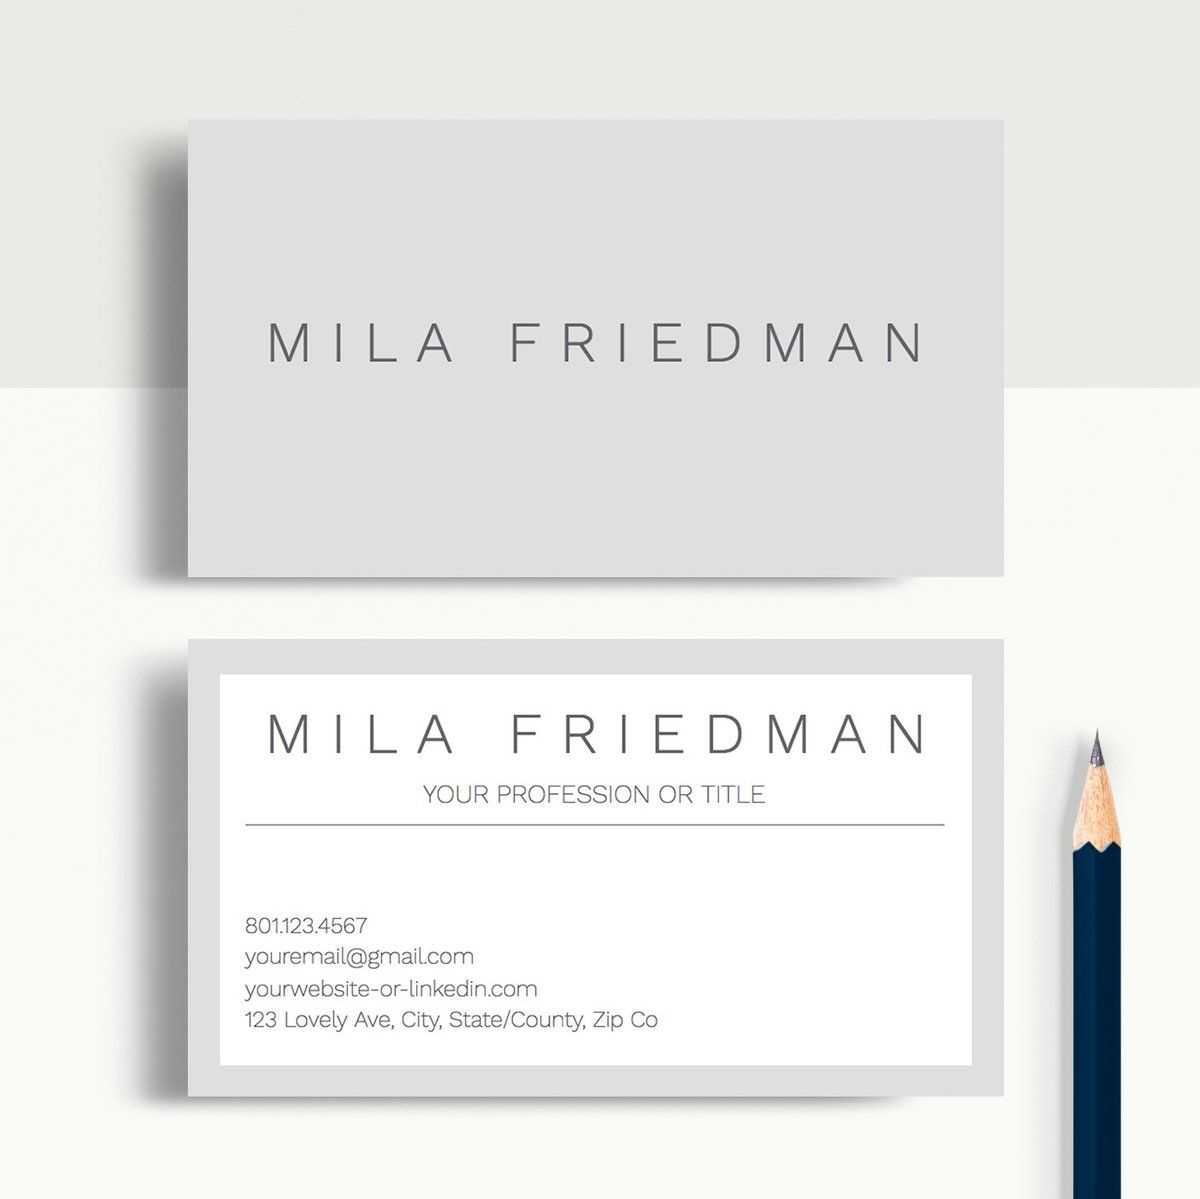 Mila Friedman | Google Docs Professional Business Cards Regarding Google Docs Business Card Template